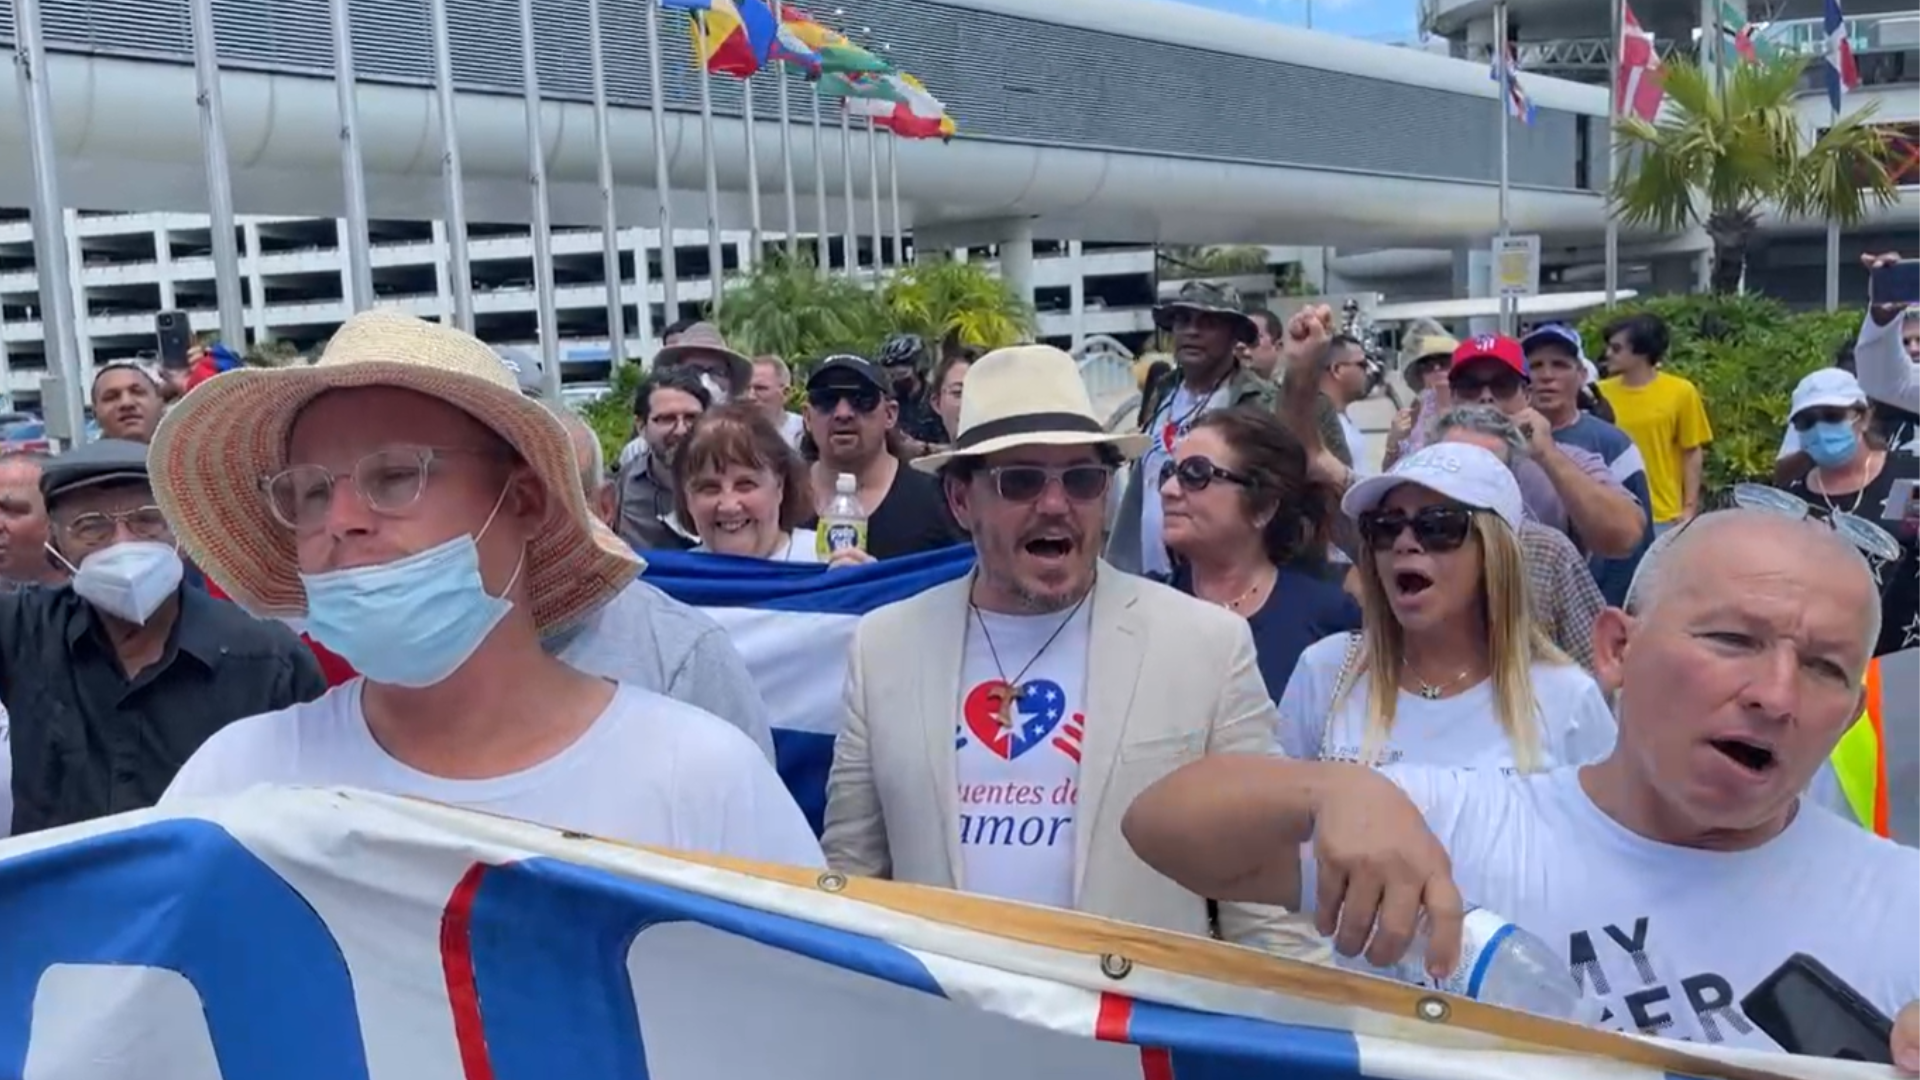 Puentes de amor organiza marcha en Miami “contra el bloqueo”